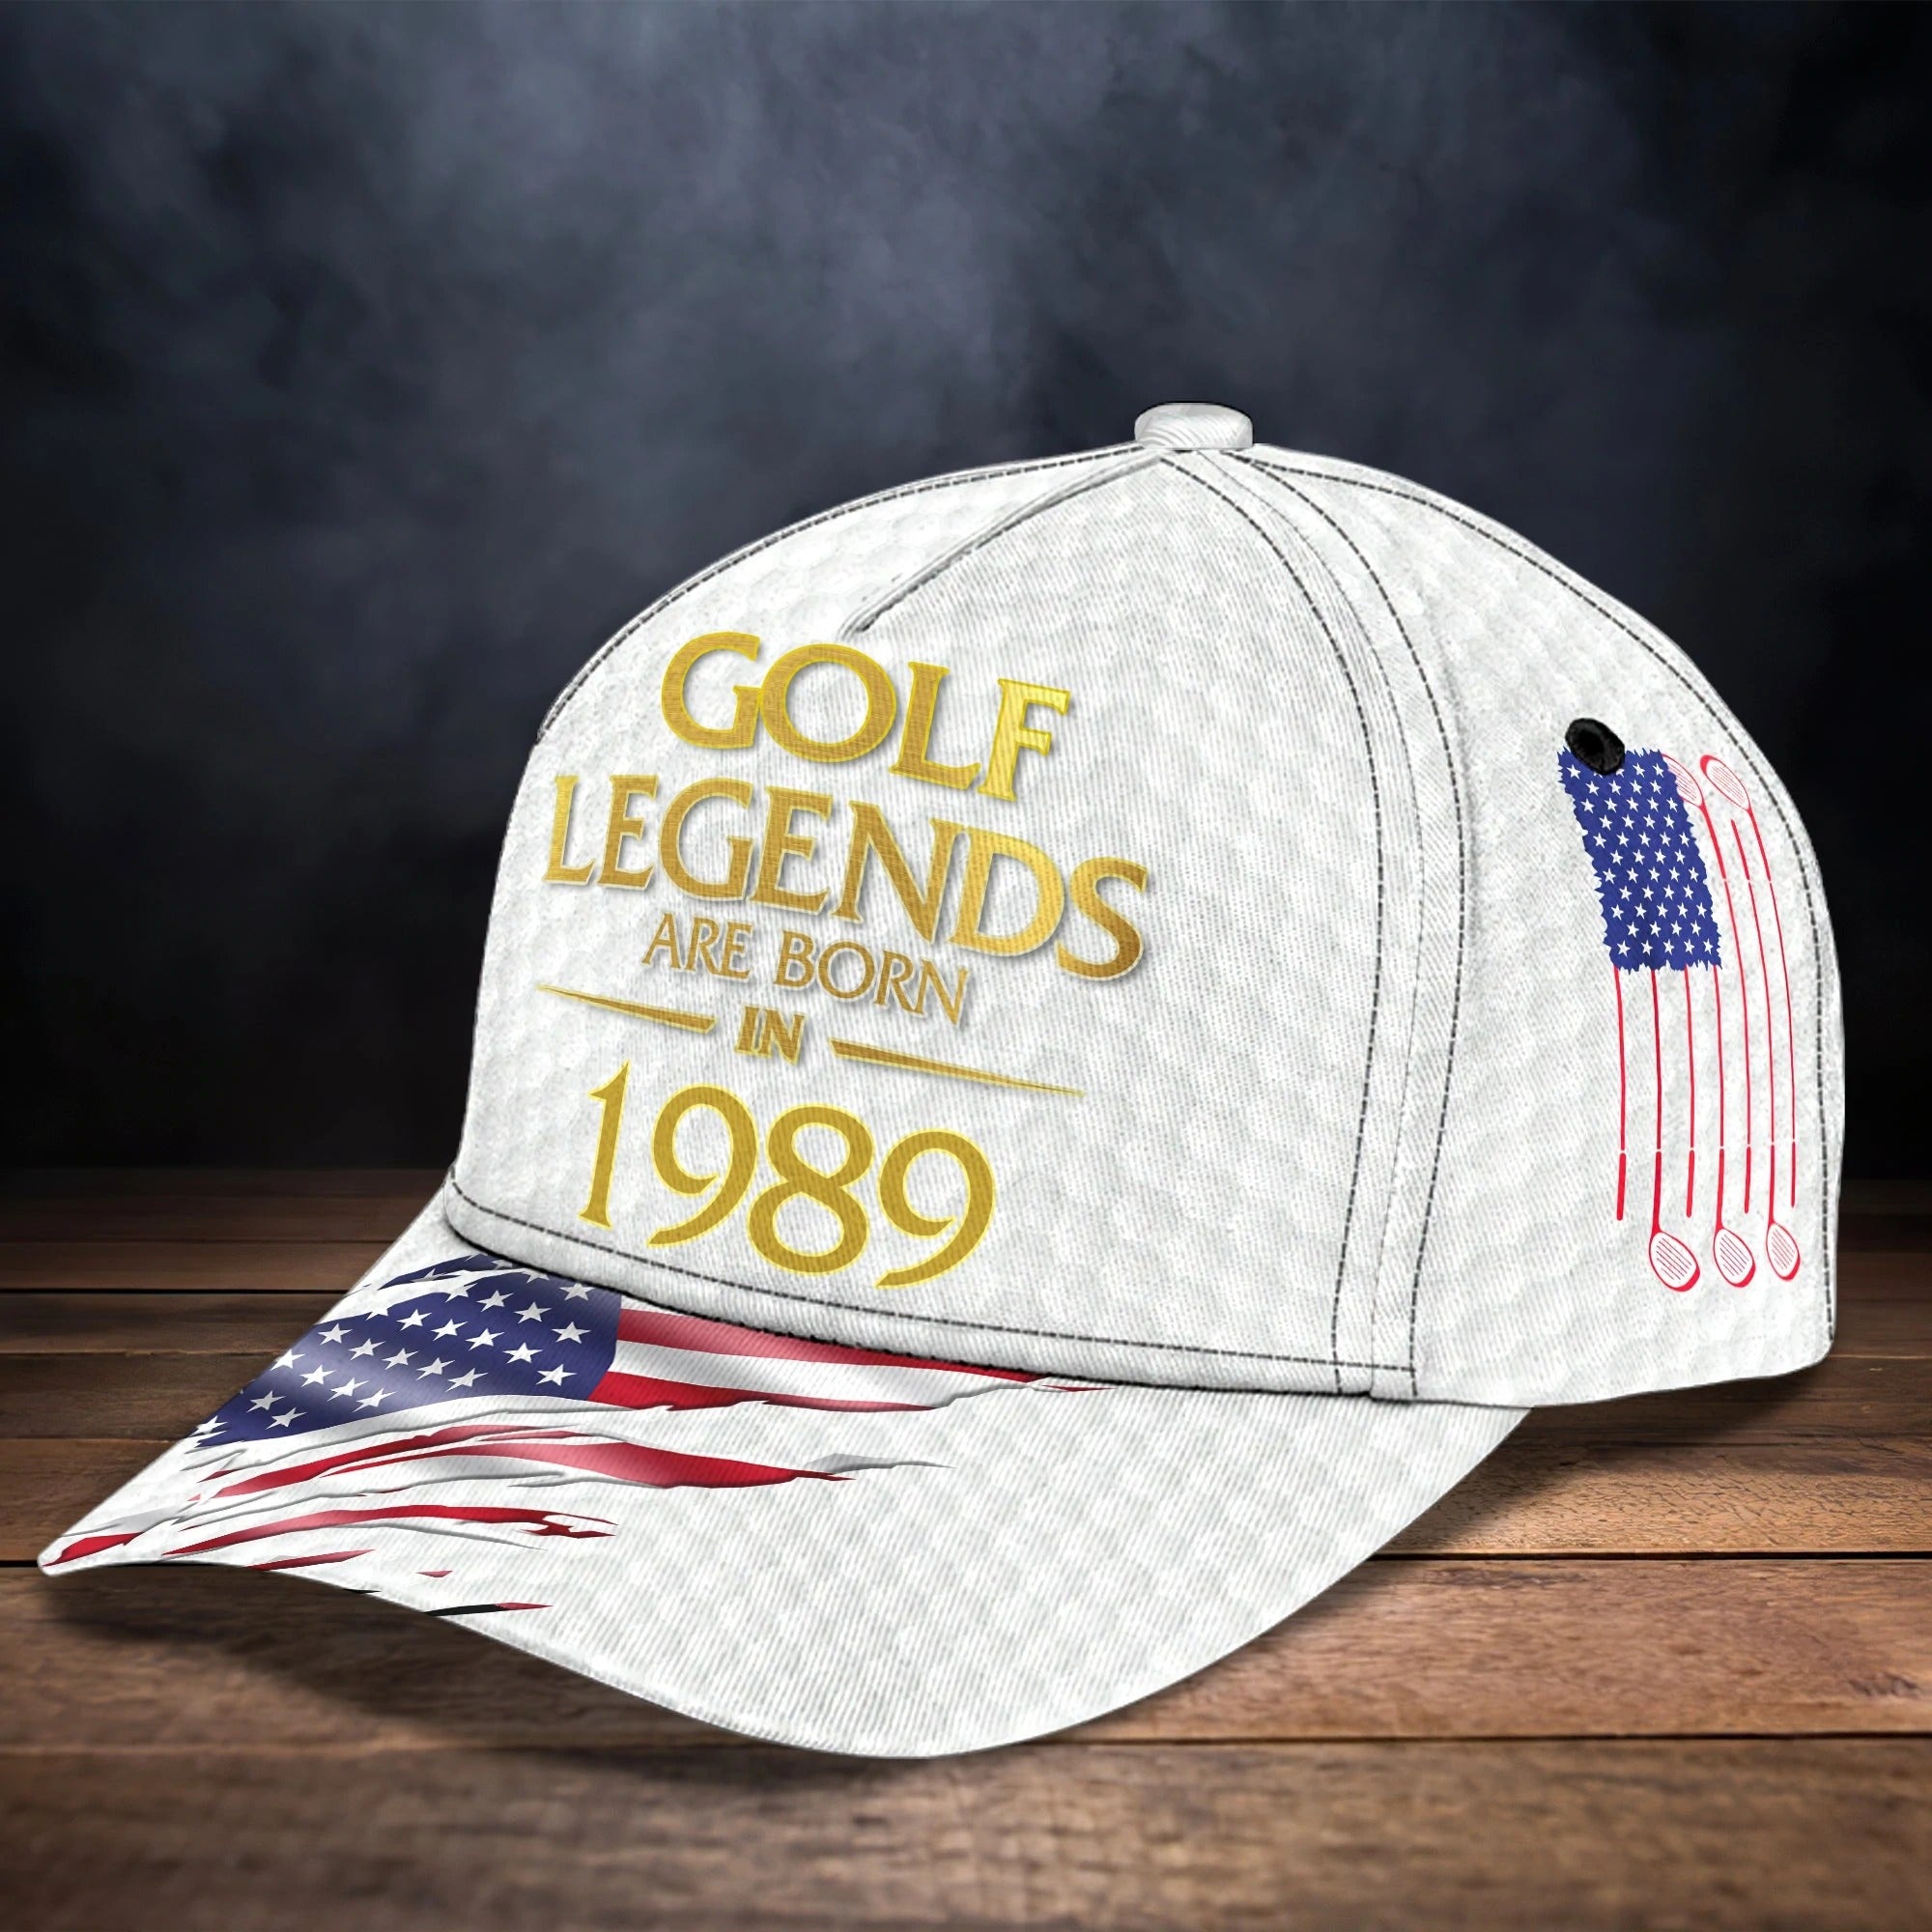 Custom Baseball Golf Caps For Men And Women/ Golf Legends Are Born In/ Best Gift For Golfer